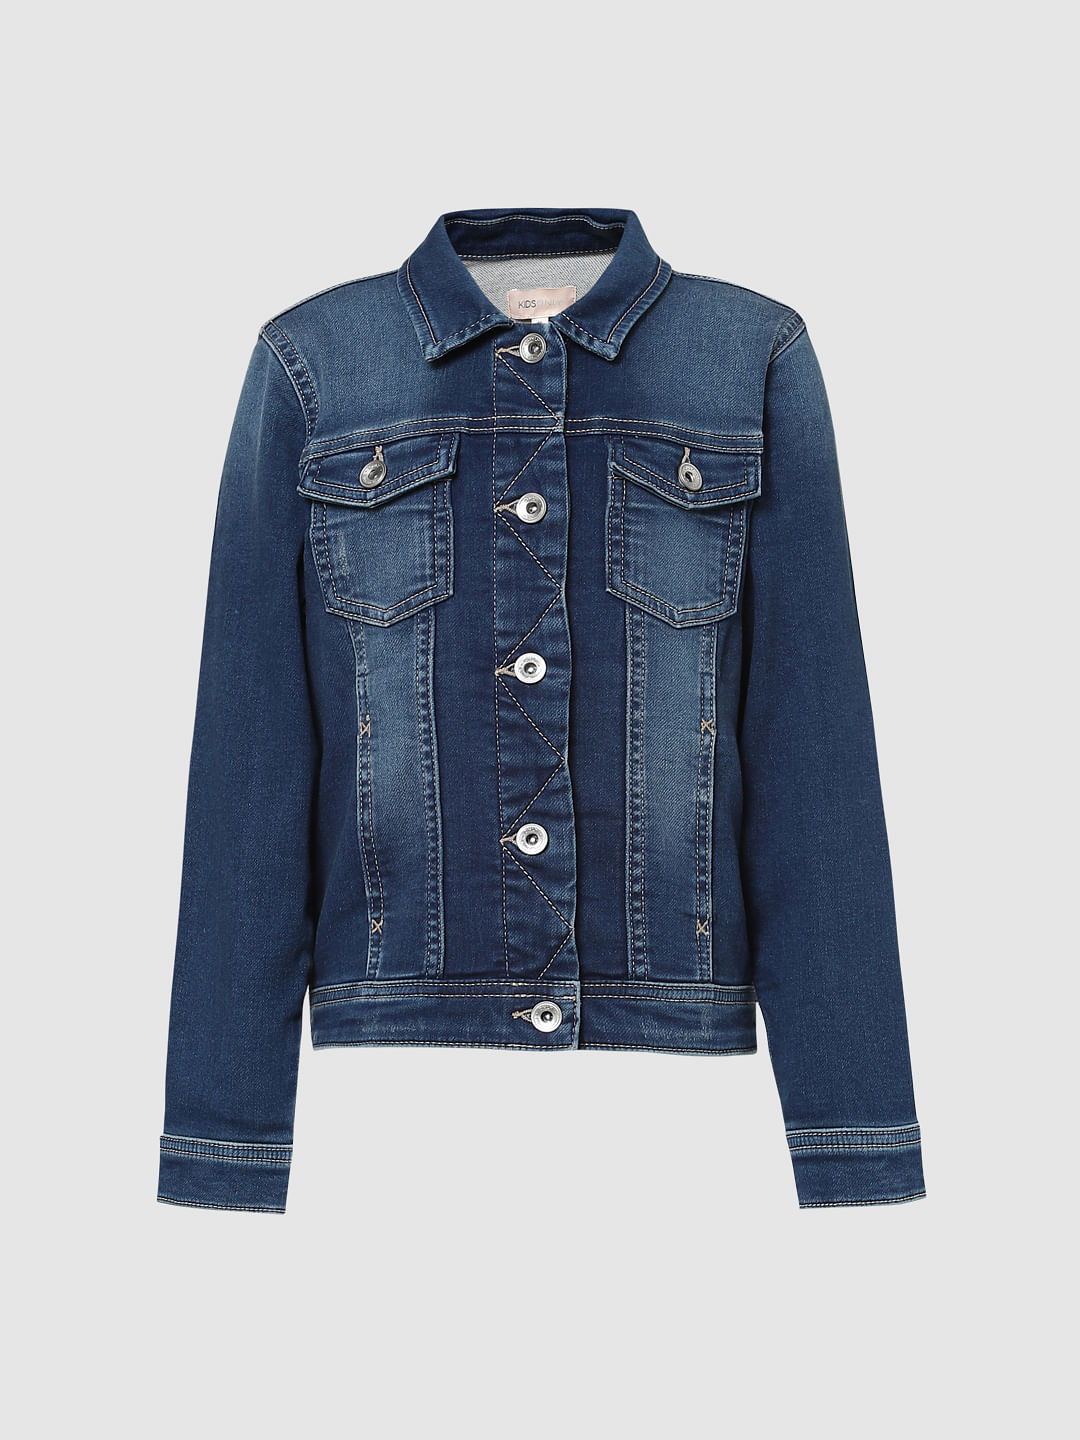 Buy Women Dark Blue Solid Denim Jacket Online | Urban Poche